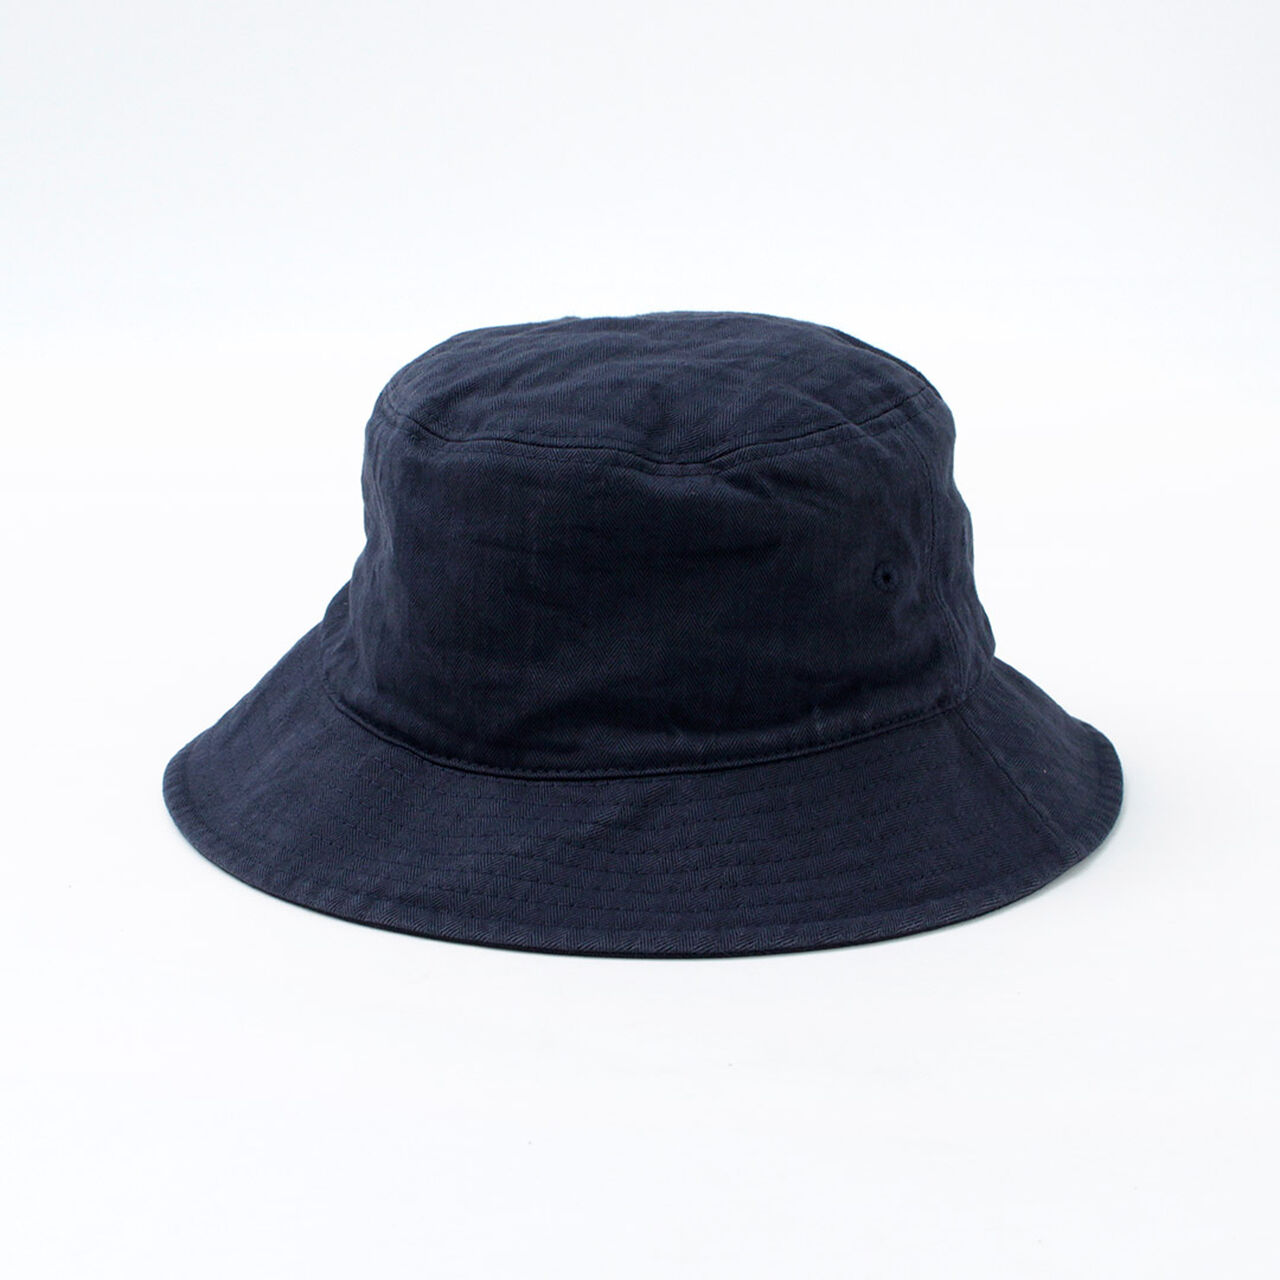 Bespoke Vintage Herringbone Bucket Hat,Navy, large image number 0